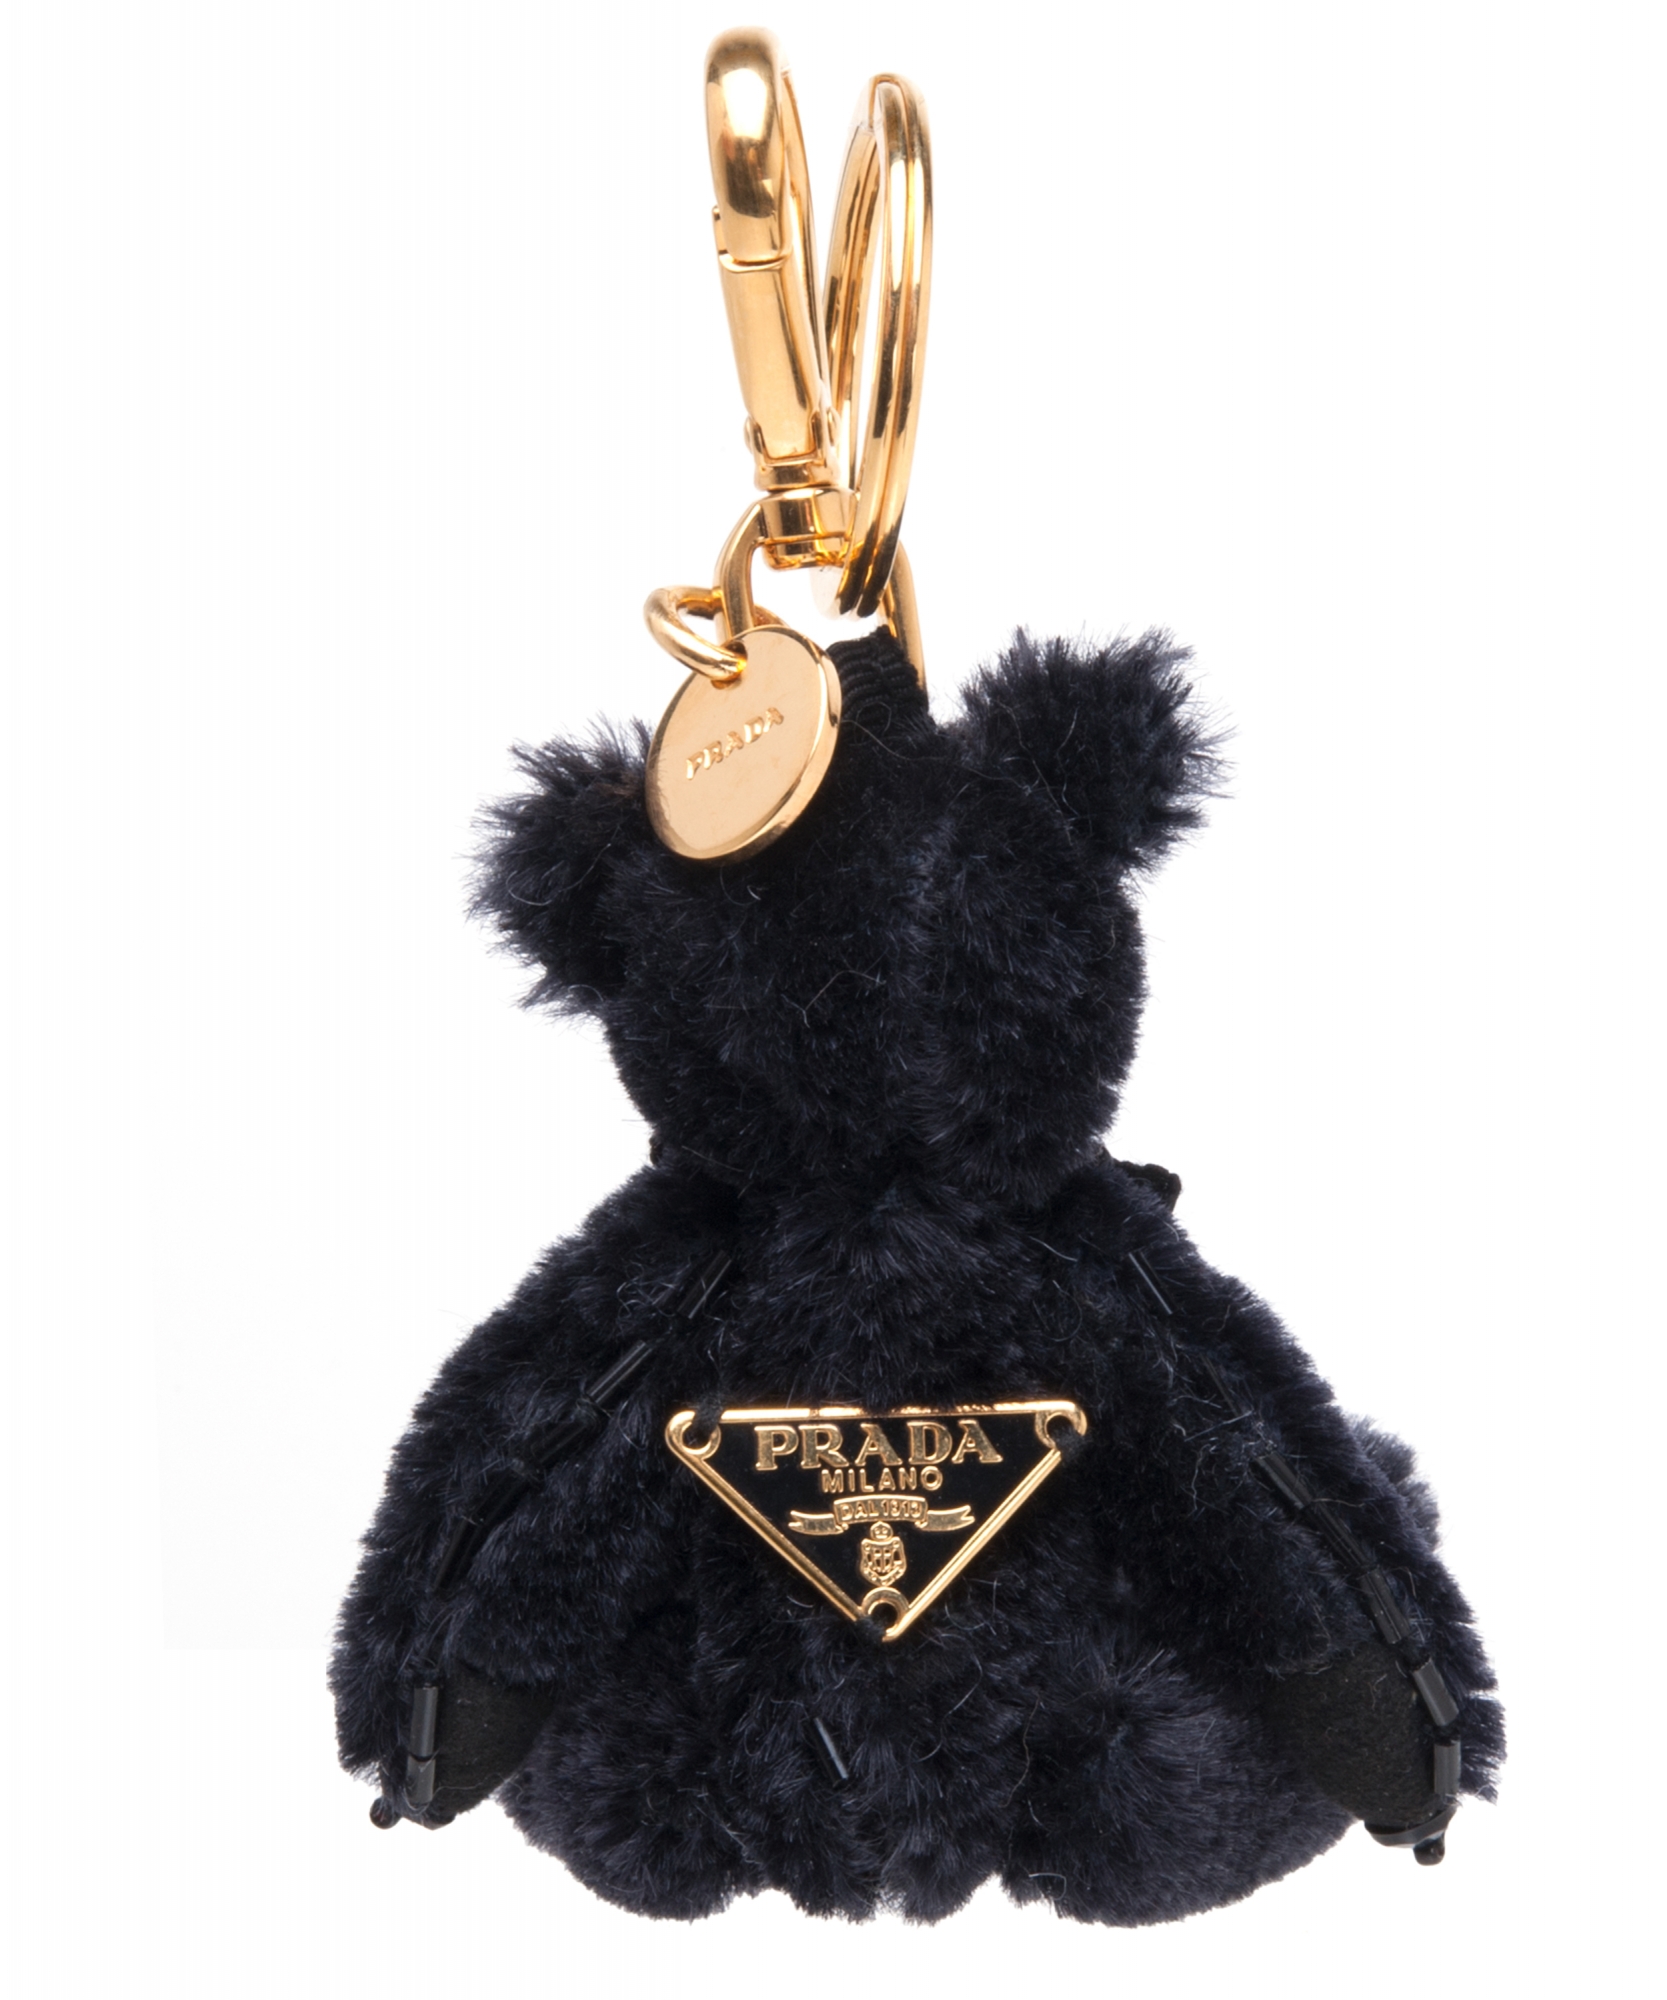 Prada Teddy Bear Charm/Key Chain 